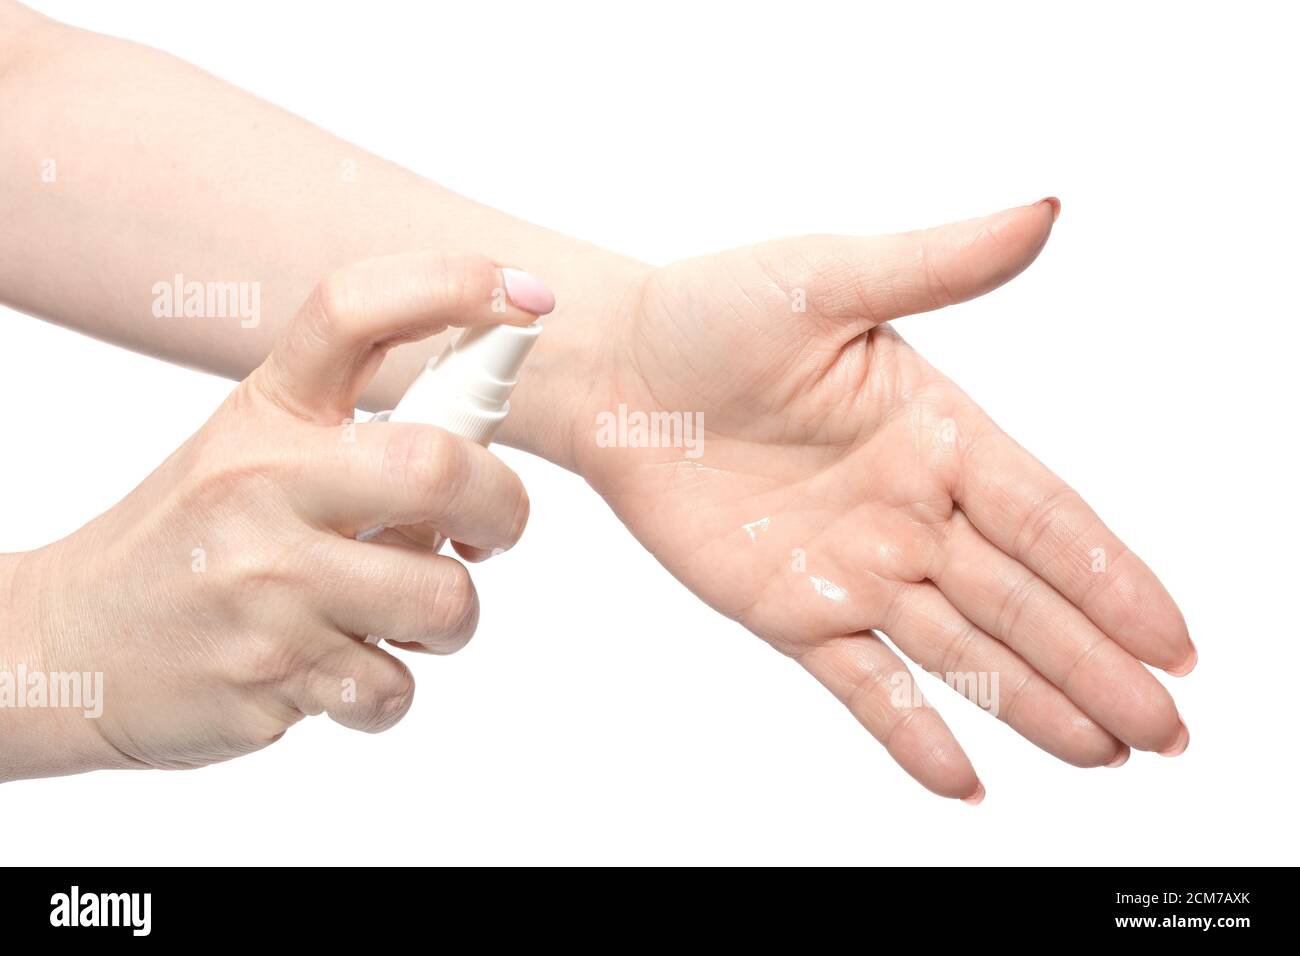 Femme appWoman appliquant un désinfectant pour les mains, se laver les mains avec du gel alcoolisé ou un désinfectant antibactérien après avoir utilisé une salle de bain publique. Concept d'hygiène, Banque D'Images